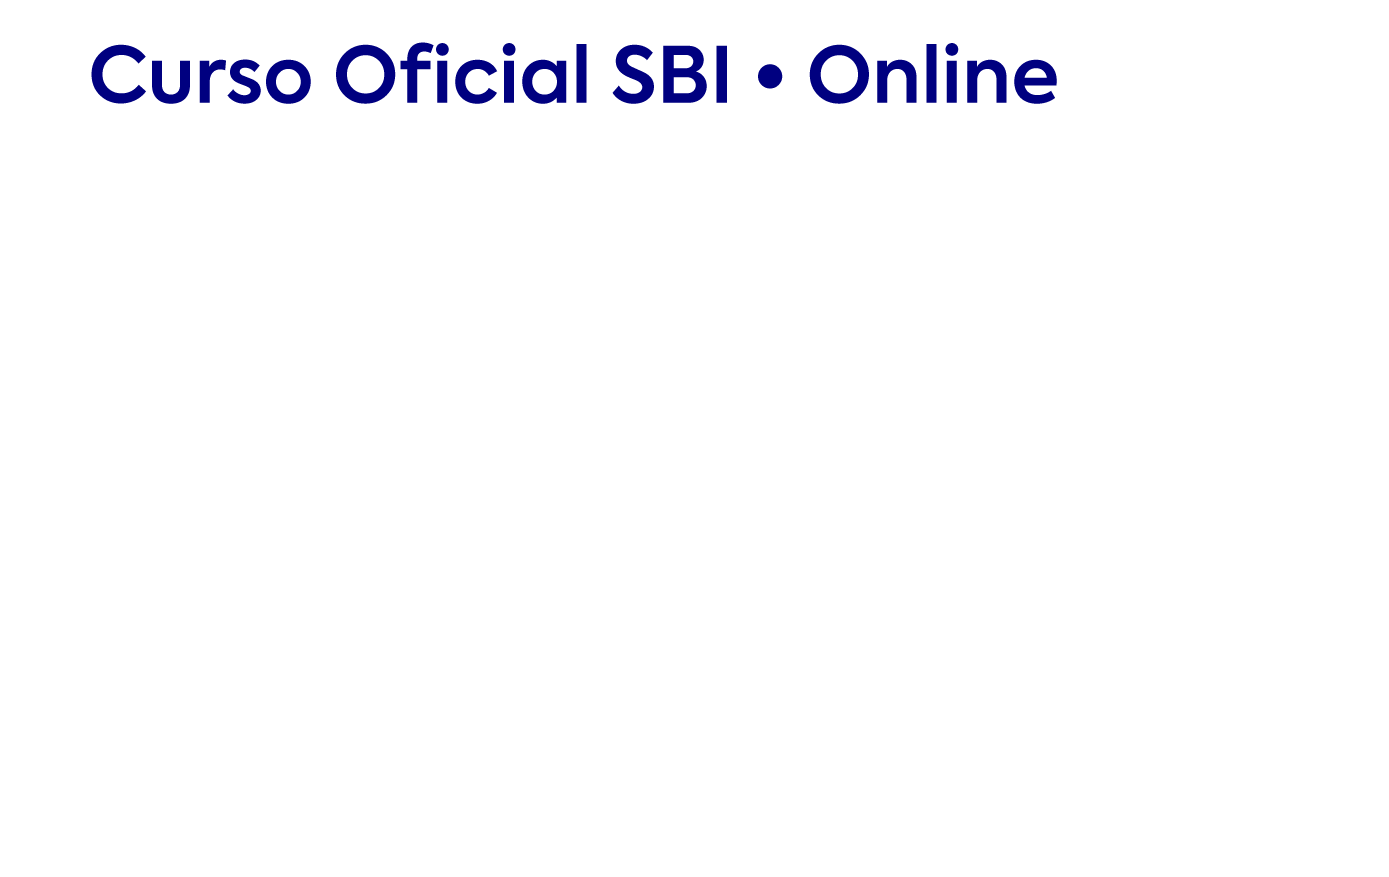 Atualização e Manejo Clínico da Covid-19 | Curso Oficial SBI